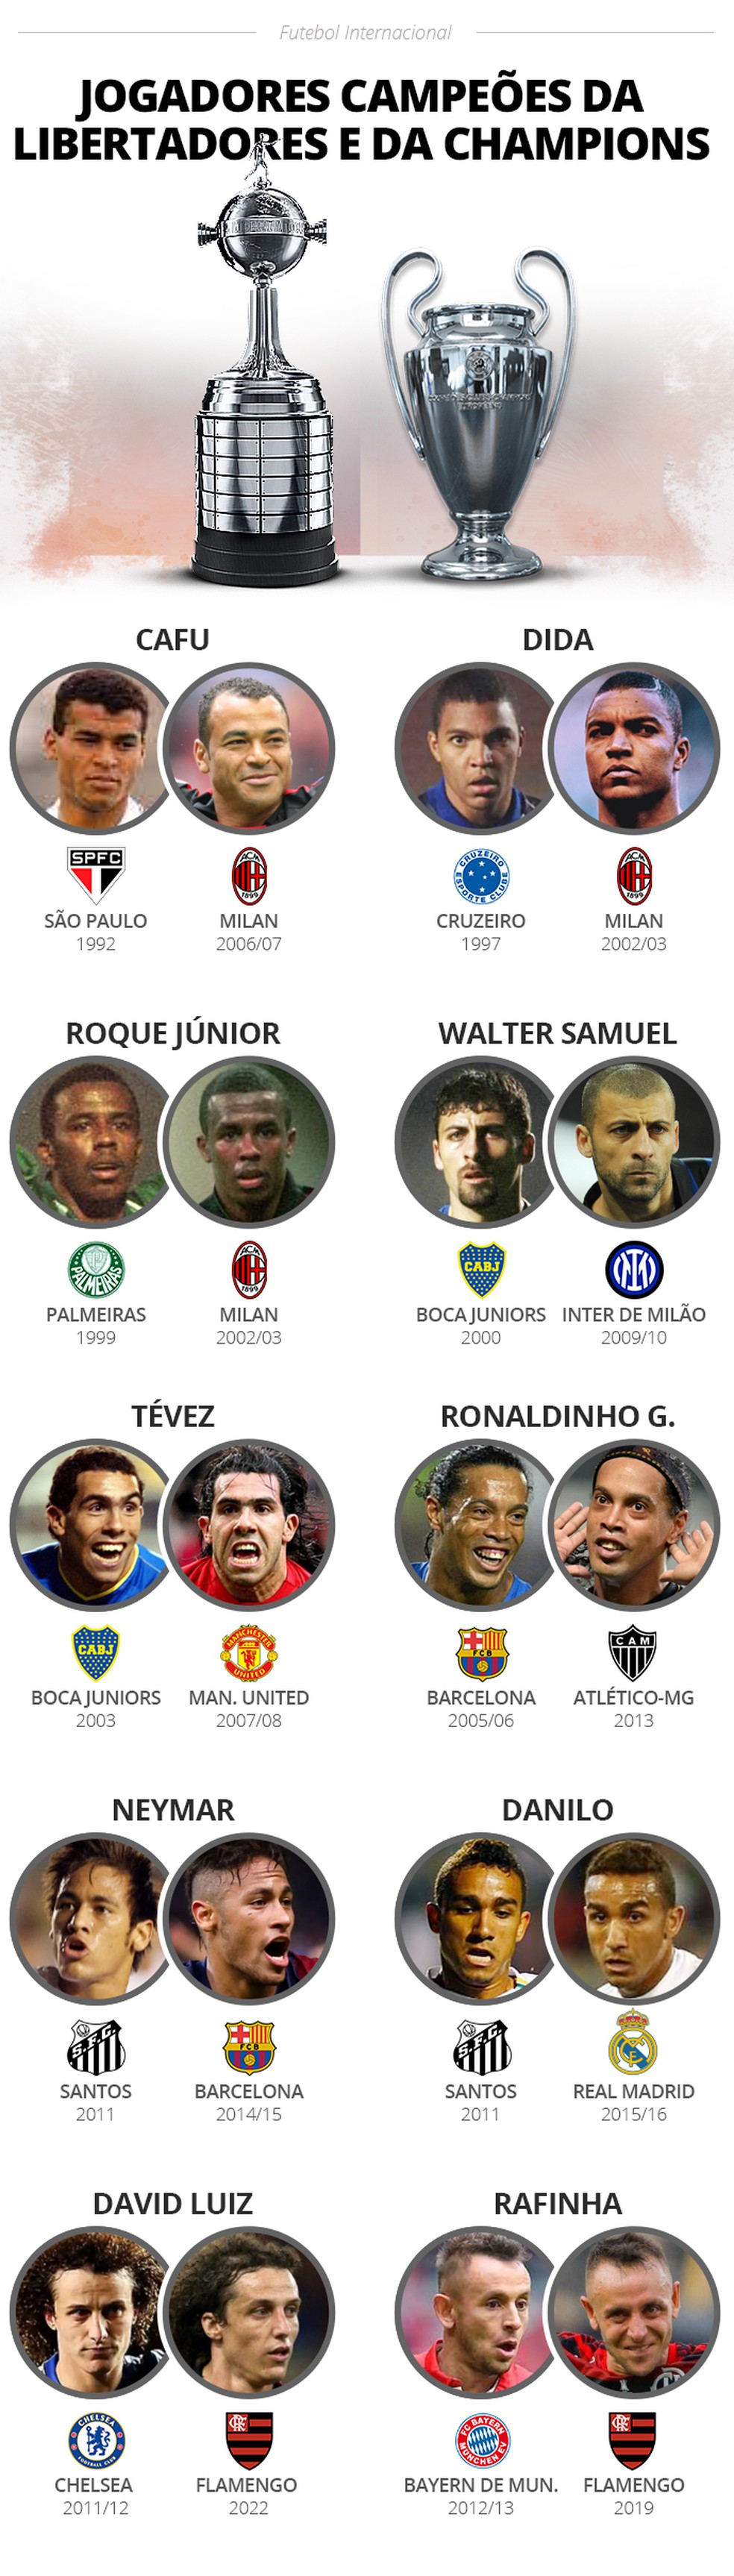 Quem são os jogadores que mais ganharam a Champions League?